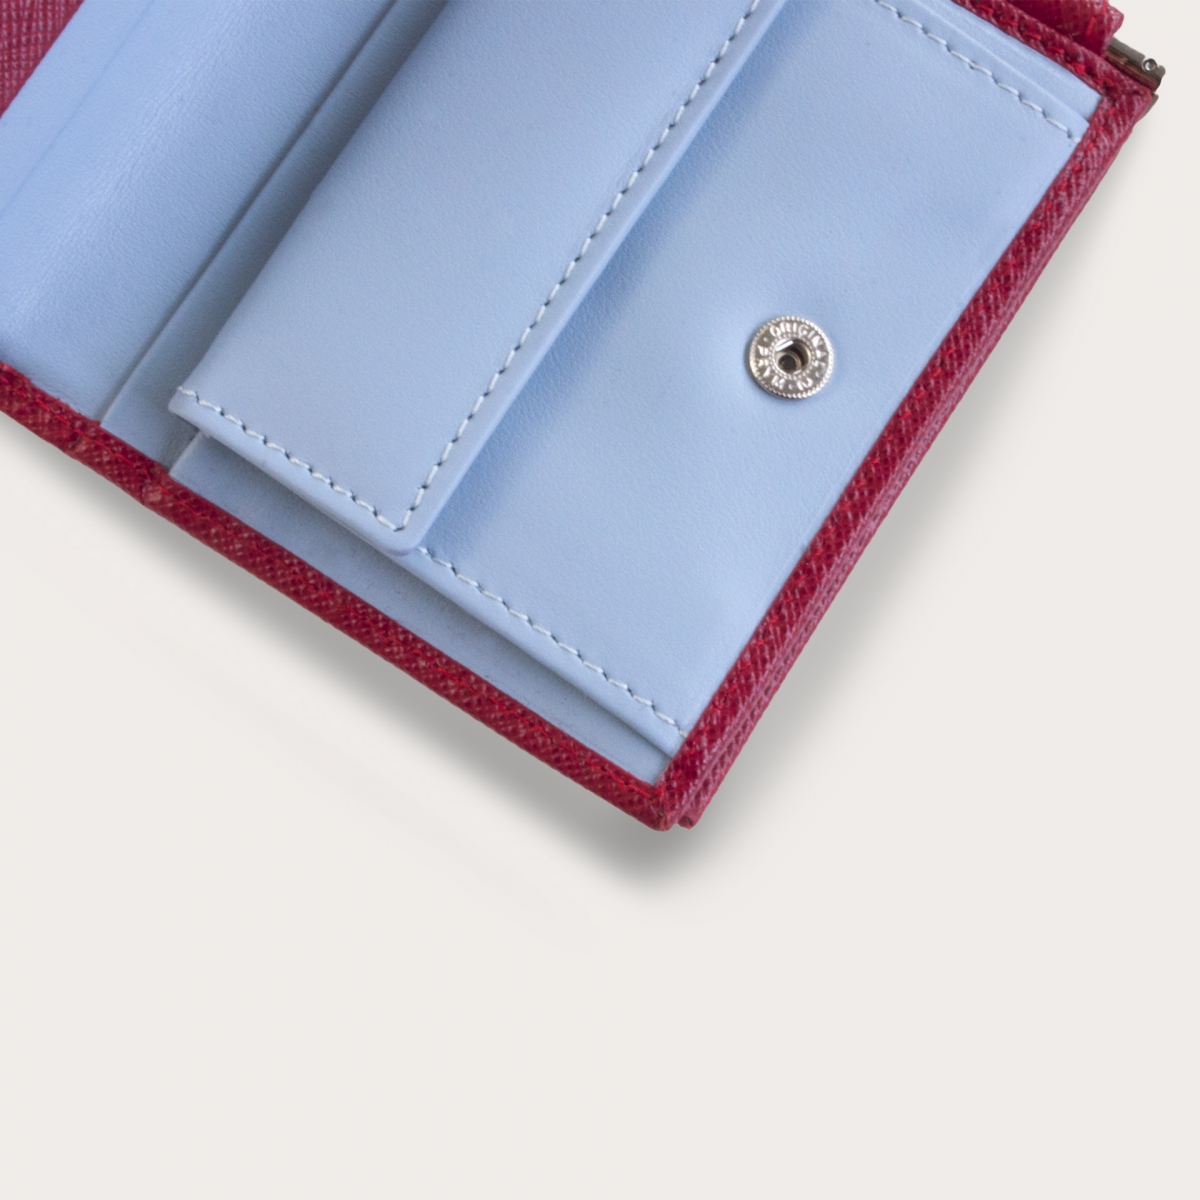 Mini portafoglio compatto in pelle saffiano con fermasoldi e portamonete, rosso e azzurro